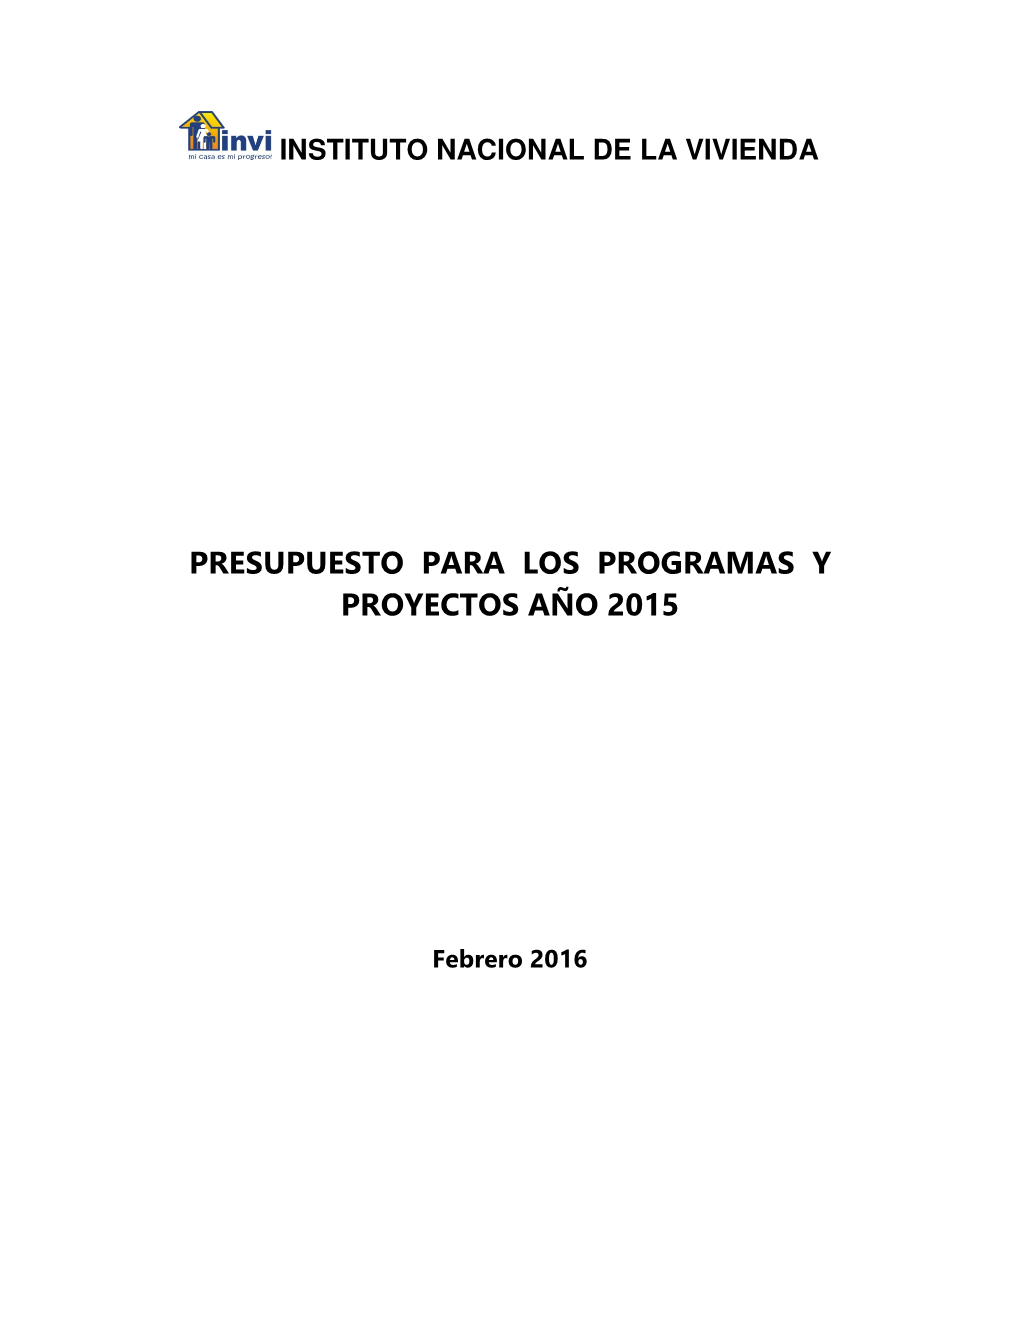 Presupuesto Para Los Programas Y Proyectos Año 2015